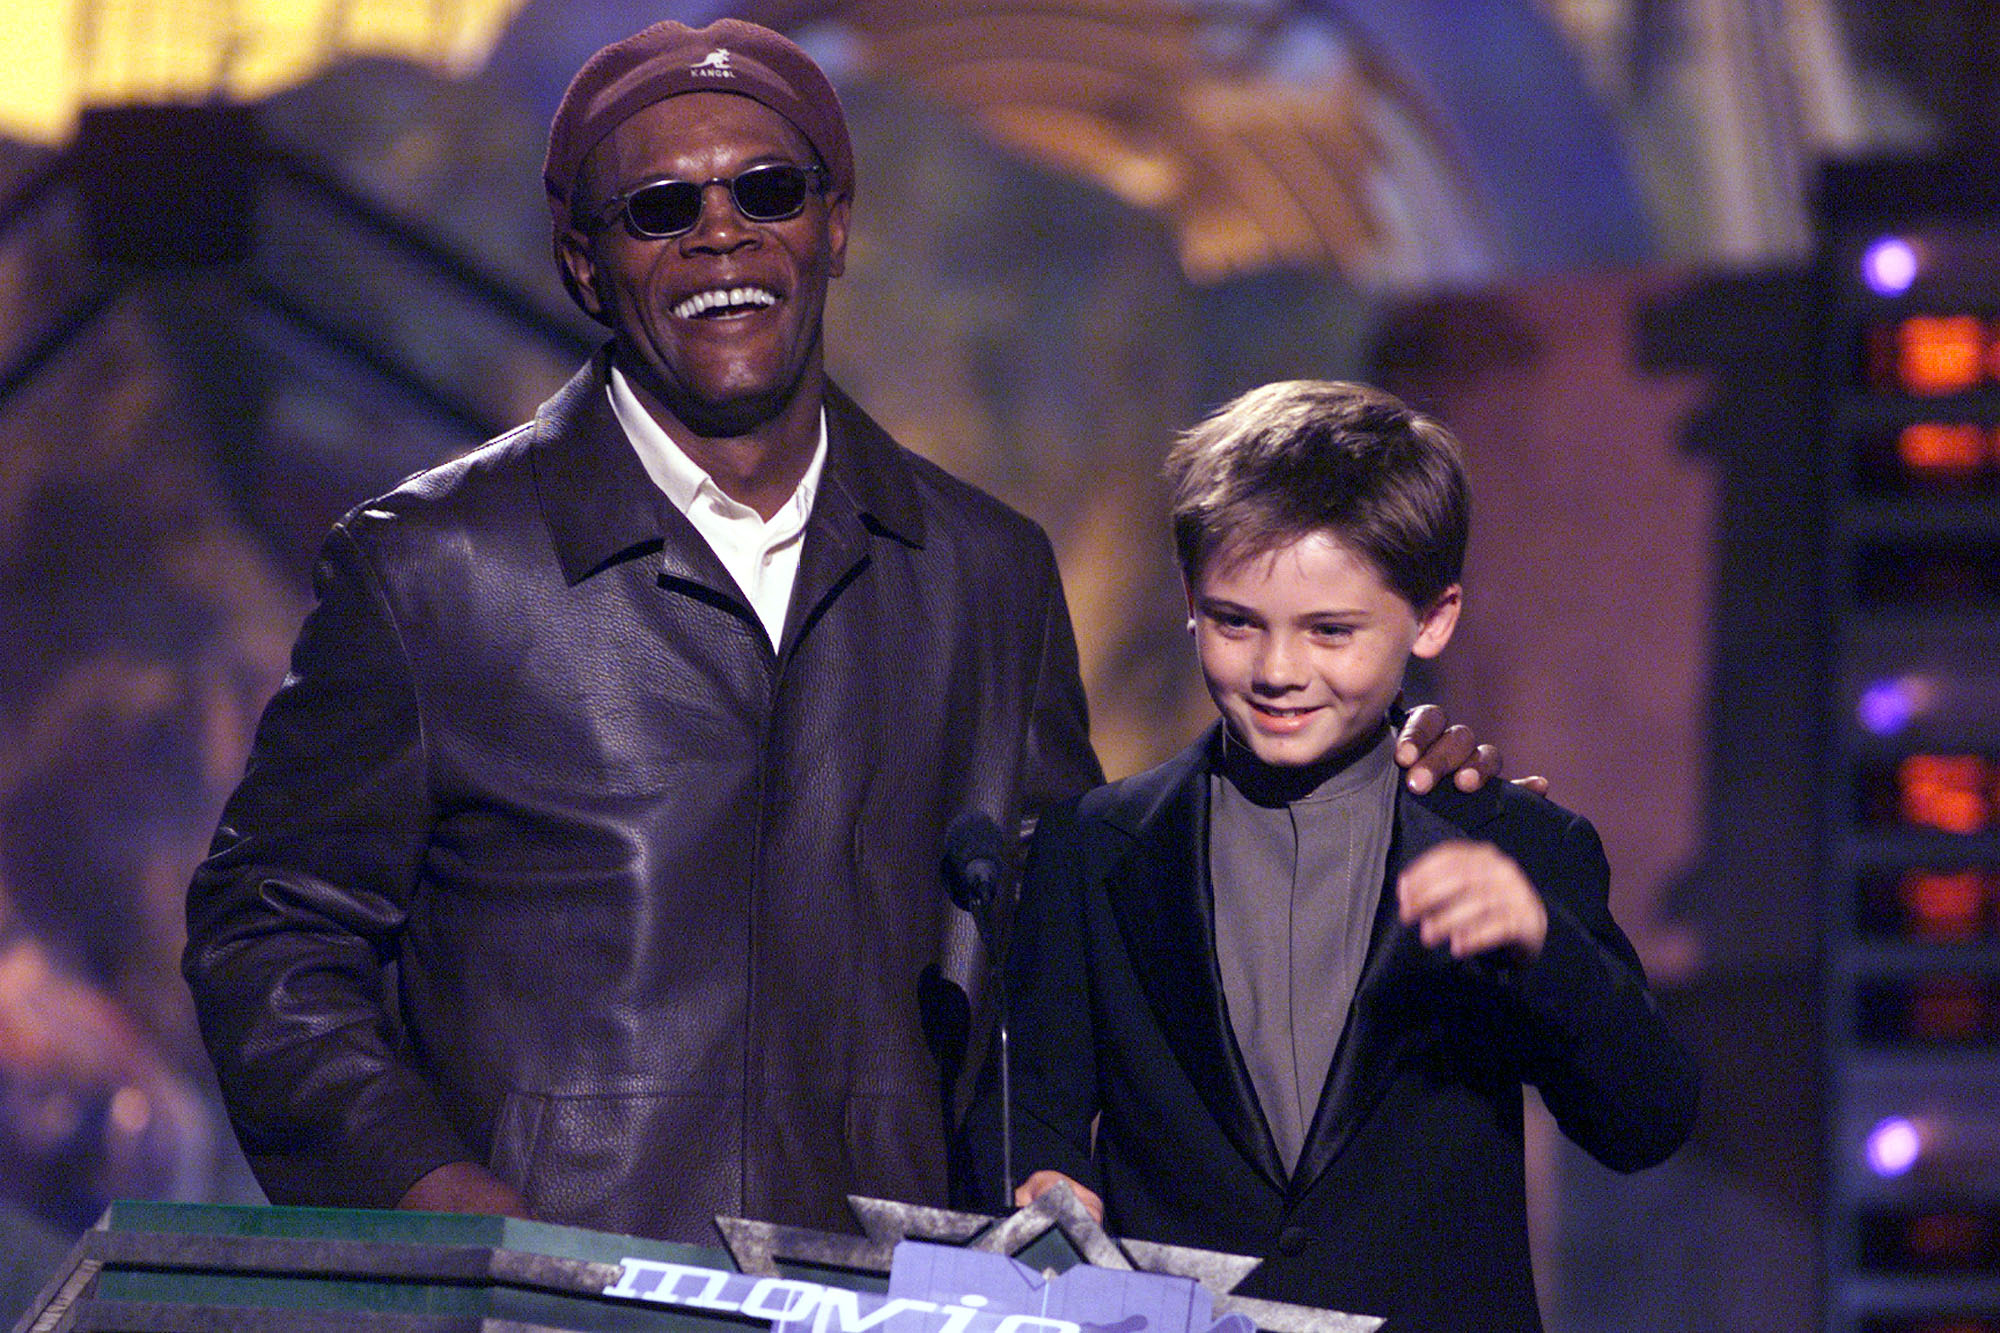 Les présentateurs Samuel L. Jackson, et Jake Lloyd à Los Angeles, Californie, le 5 juin 1999 | Source : Getty Images